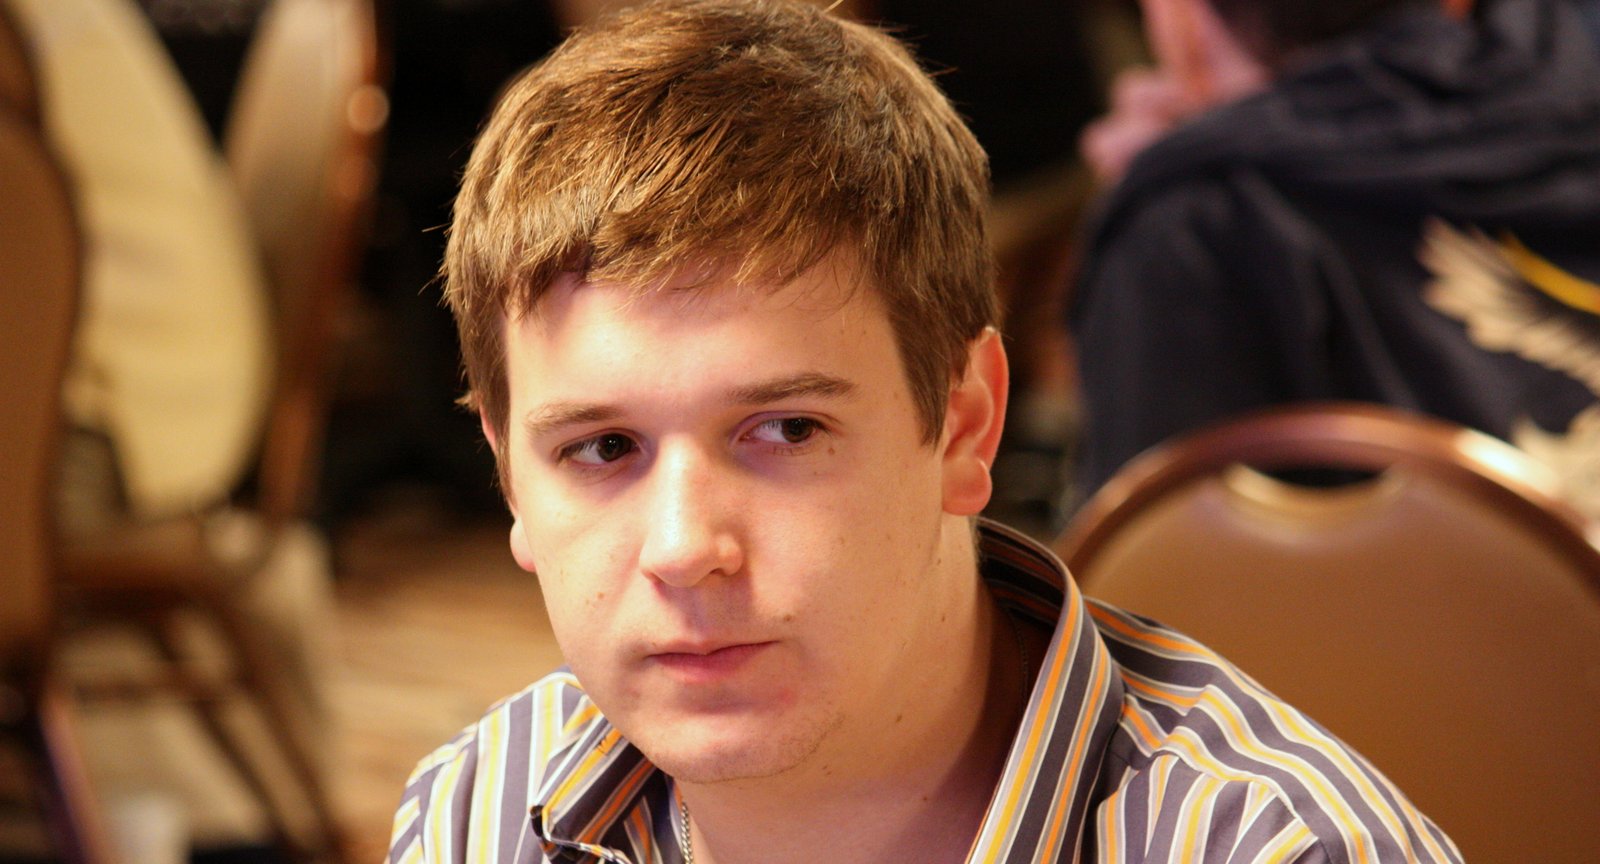 High Stakes Online Poker Legend Richard “Nutsinho” Lyndaker Dies from Overdose at 33